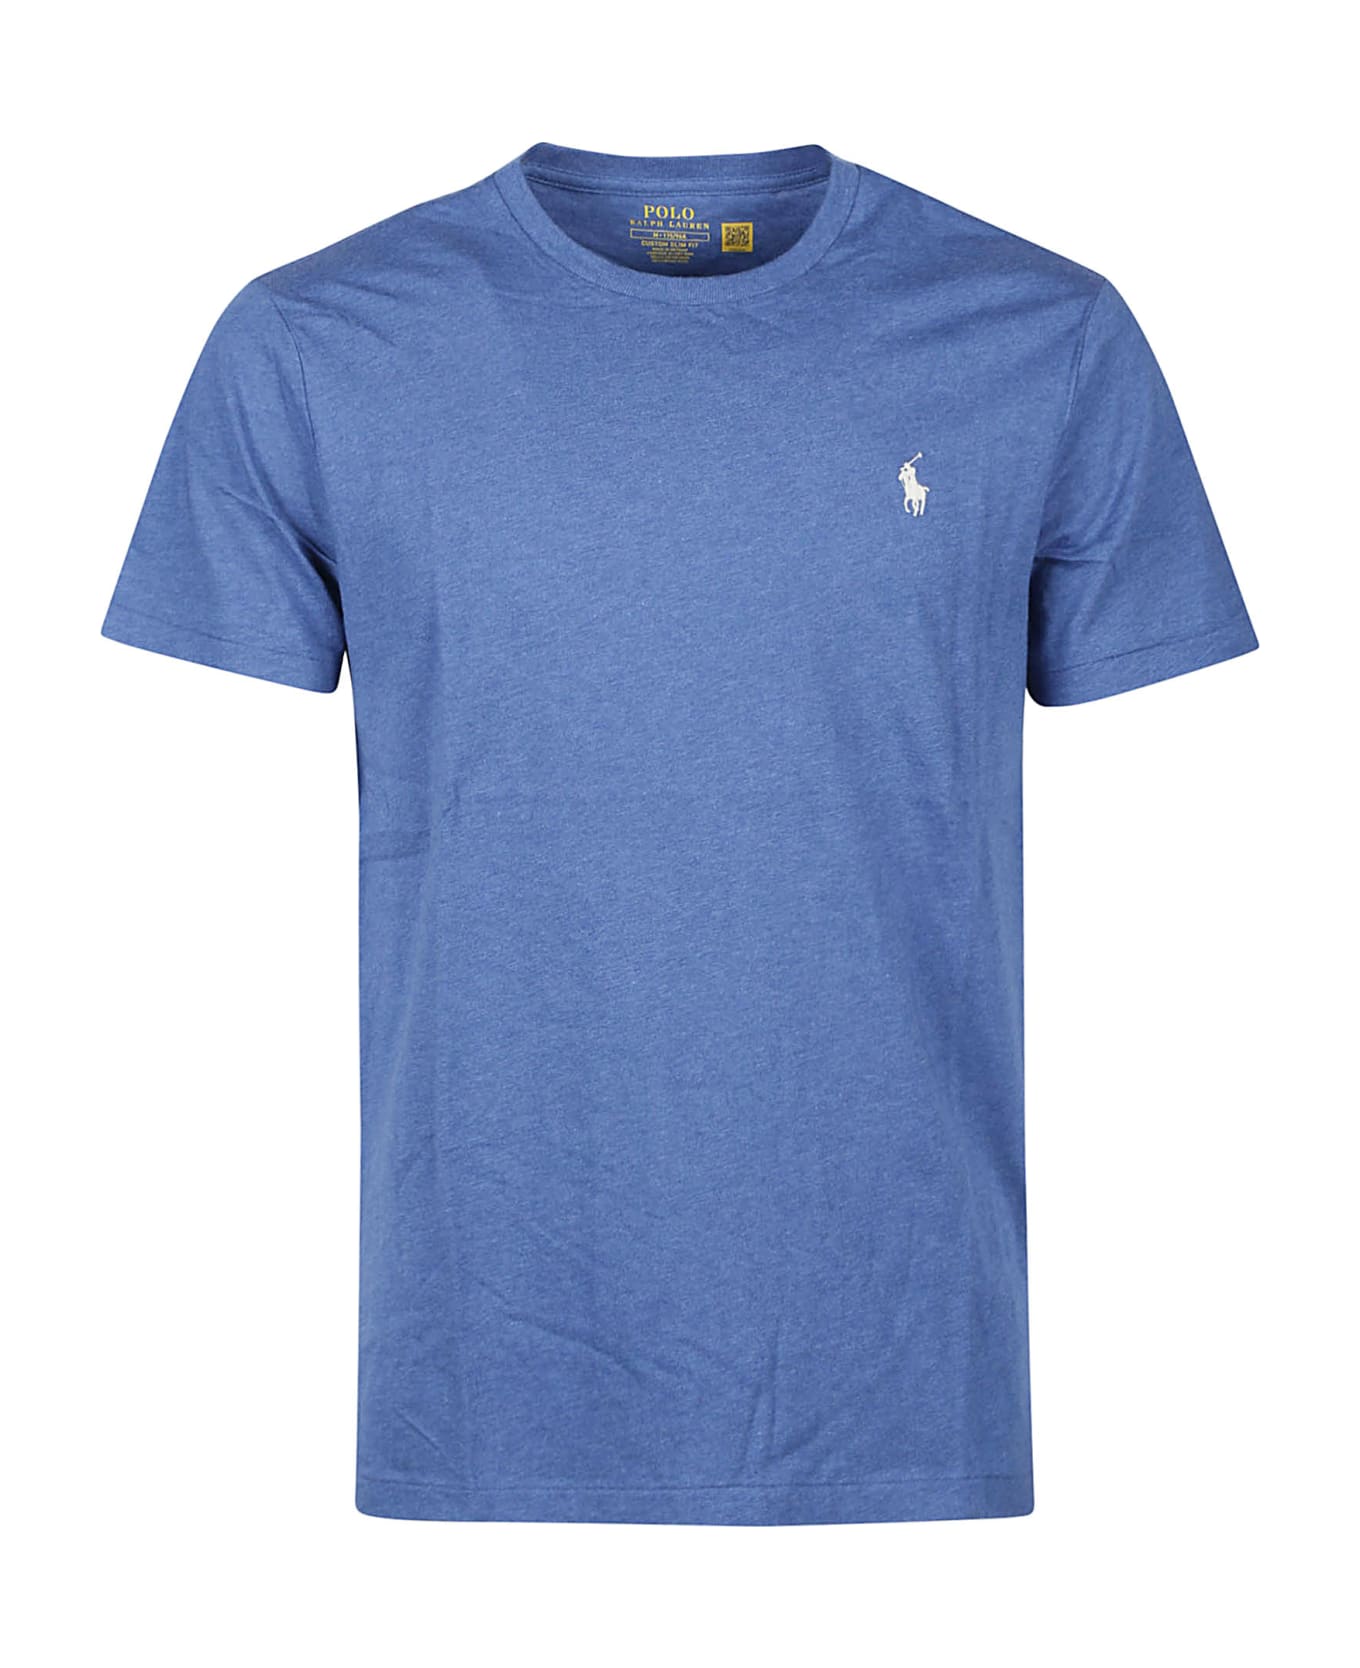 Ralph Lauren T-shirt - Fog Blue Heather シャツ